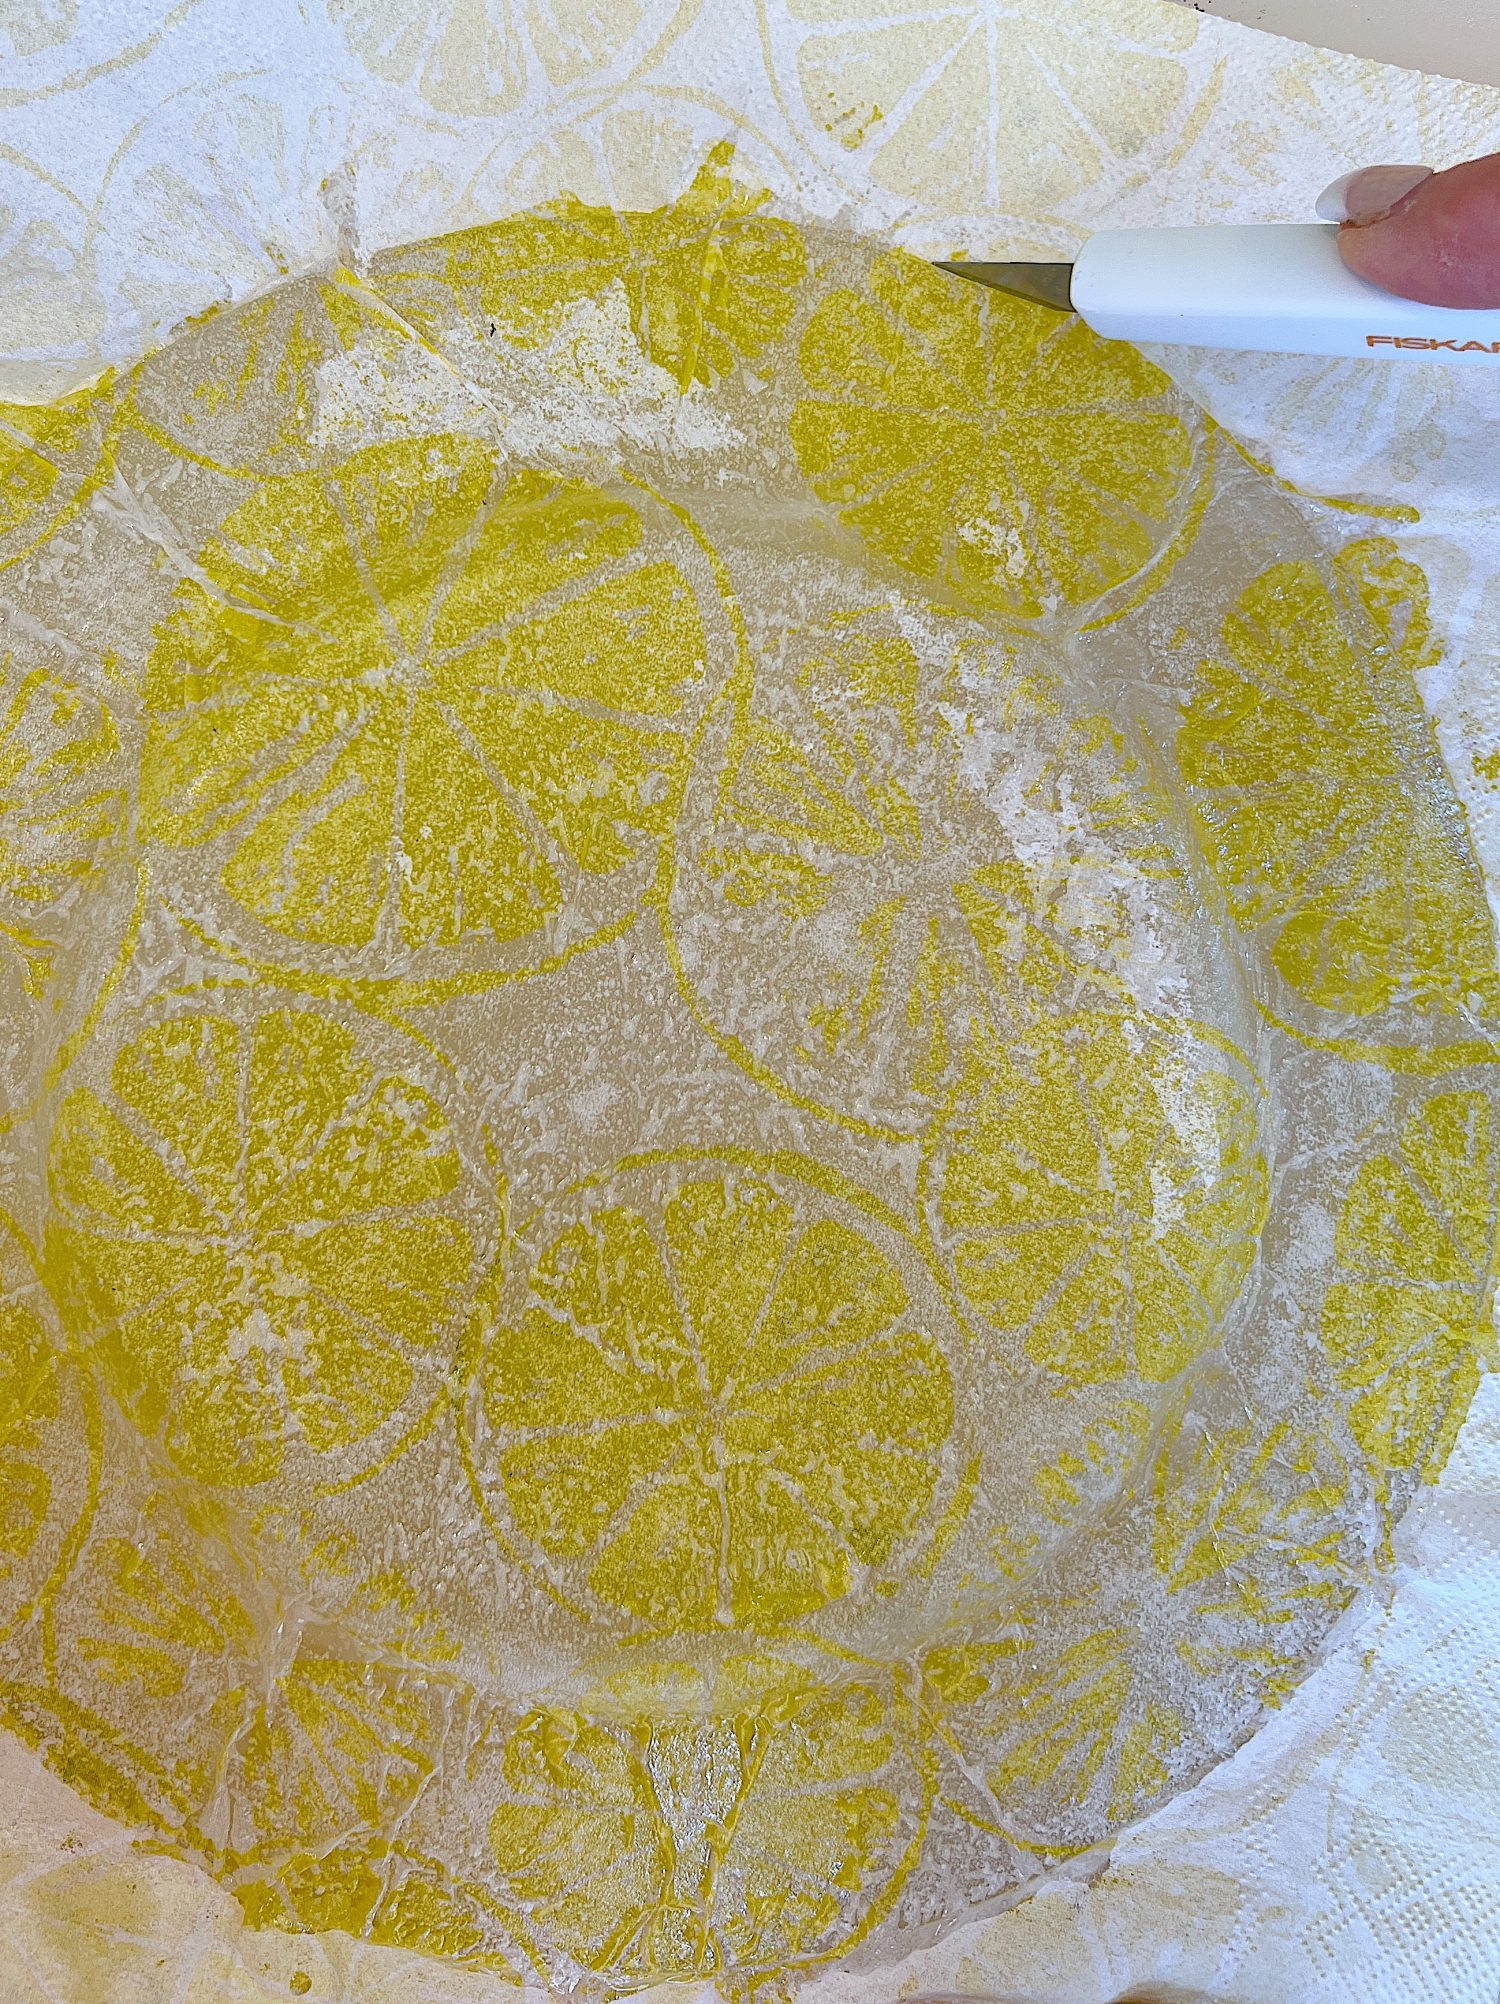 How to Make Lemon Plates with a Lemon Slice Napkin